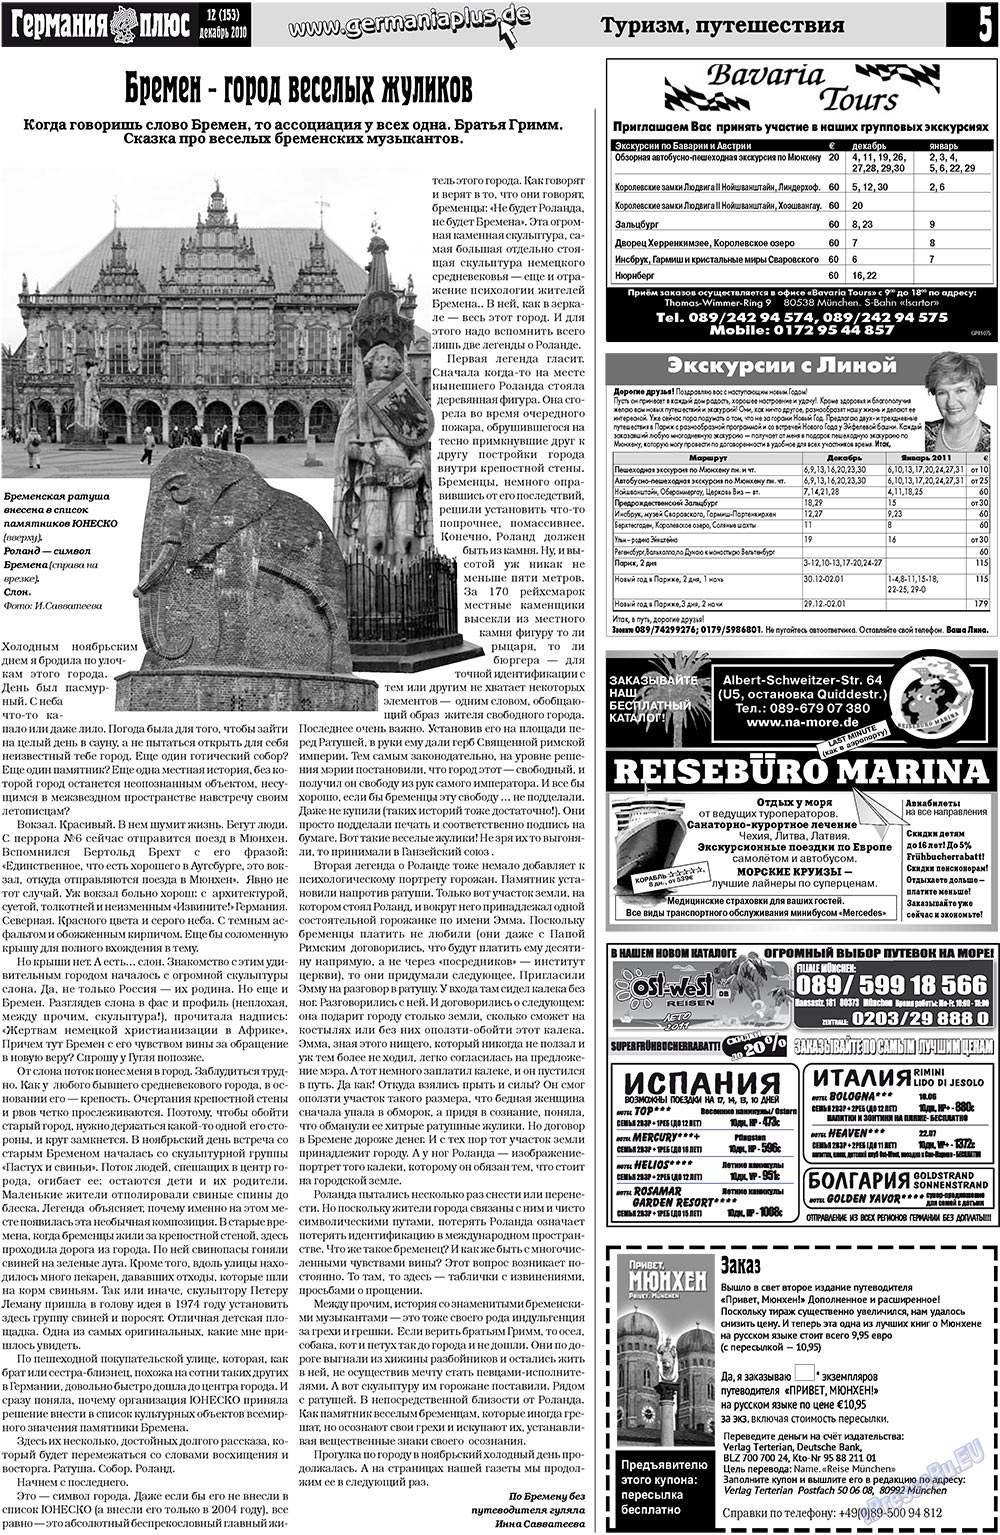 Германия плюс, газета. 2010 №12 стр.5